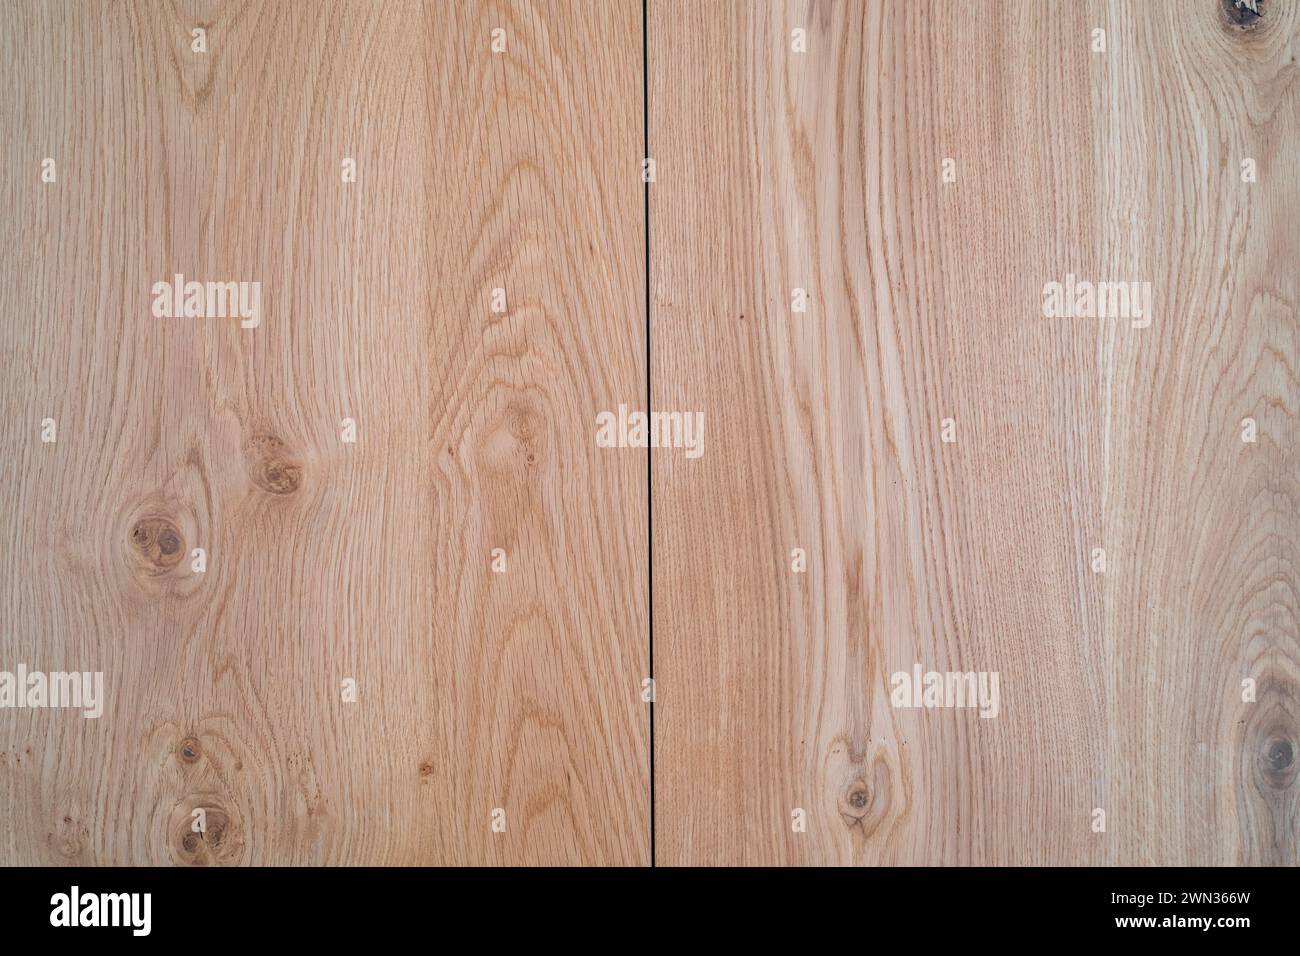 Fondo in laminato di legno. Pavimento interno o parete in legno marrone chiaro Foto Stock